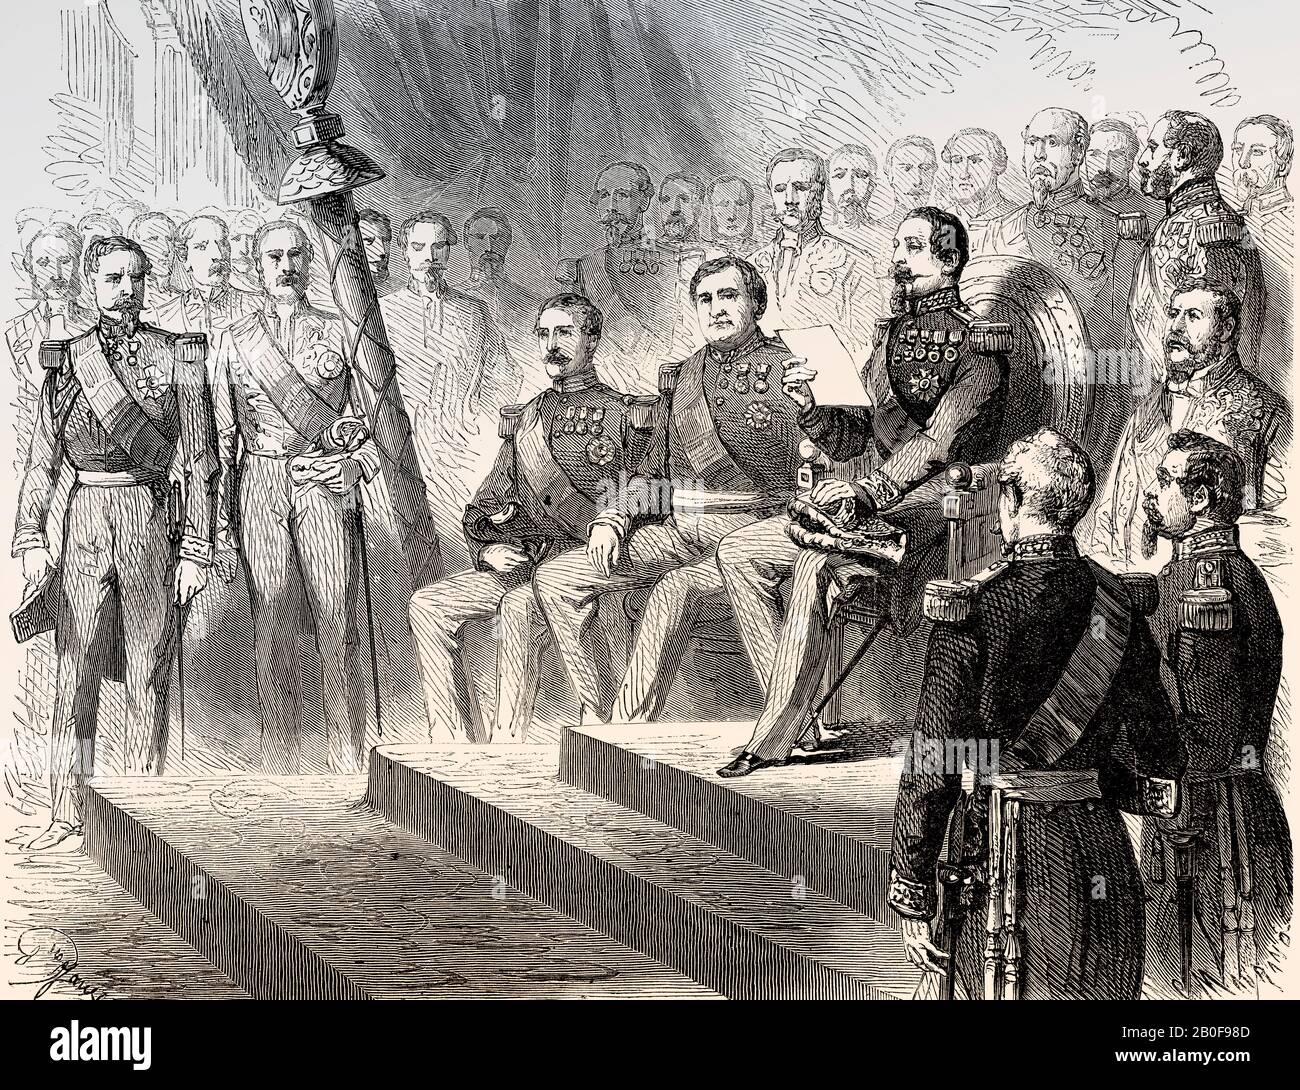 Chambre des députés, ouverture de la session législative par Louis-Napoléon Bonaparte, Napoléon III, deuxième Empire français, 1863 Banque D'Images